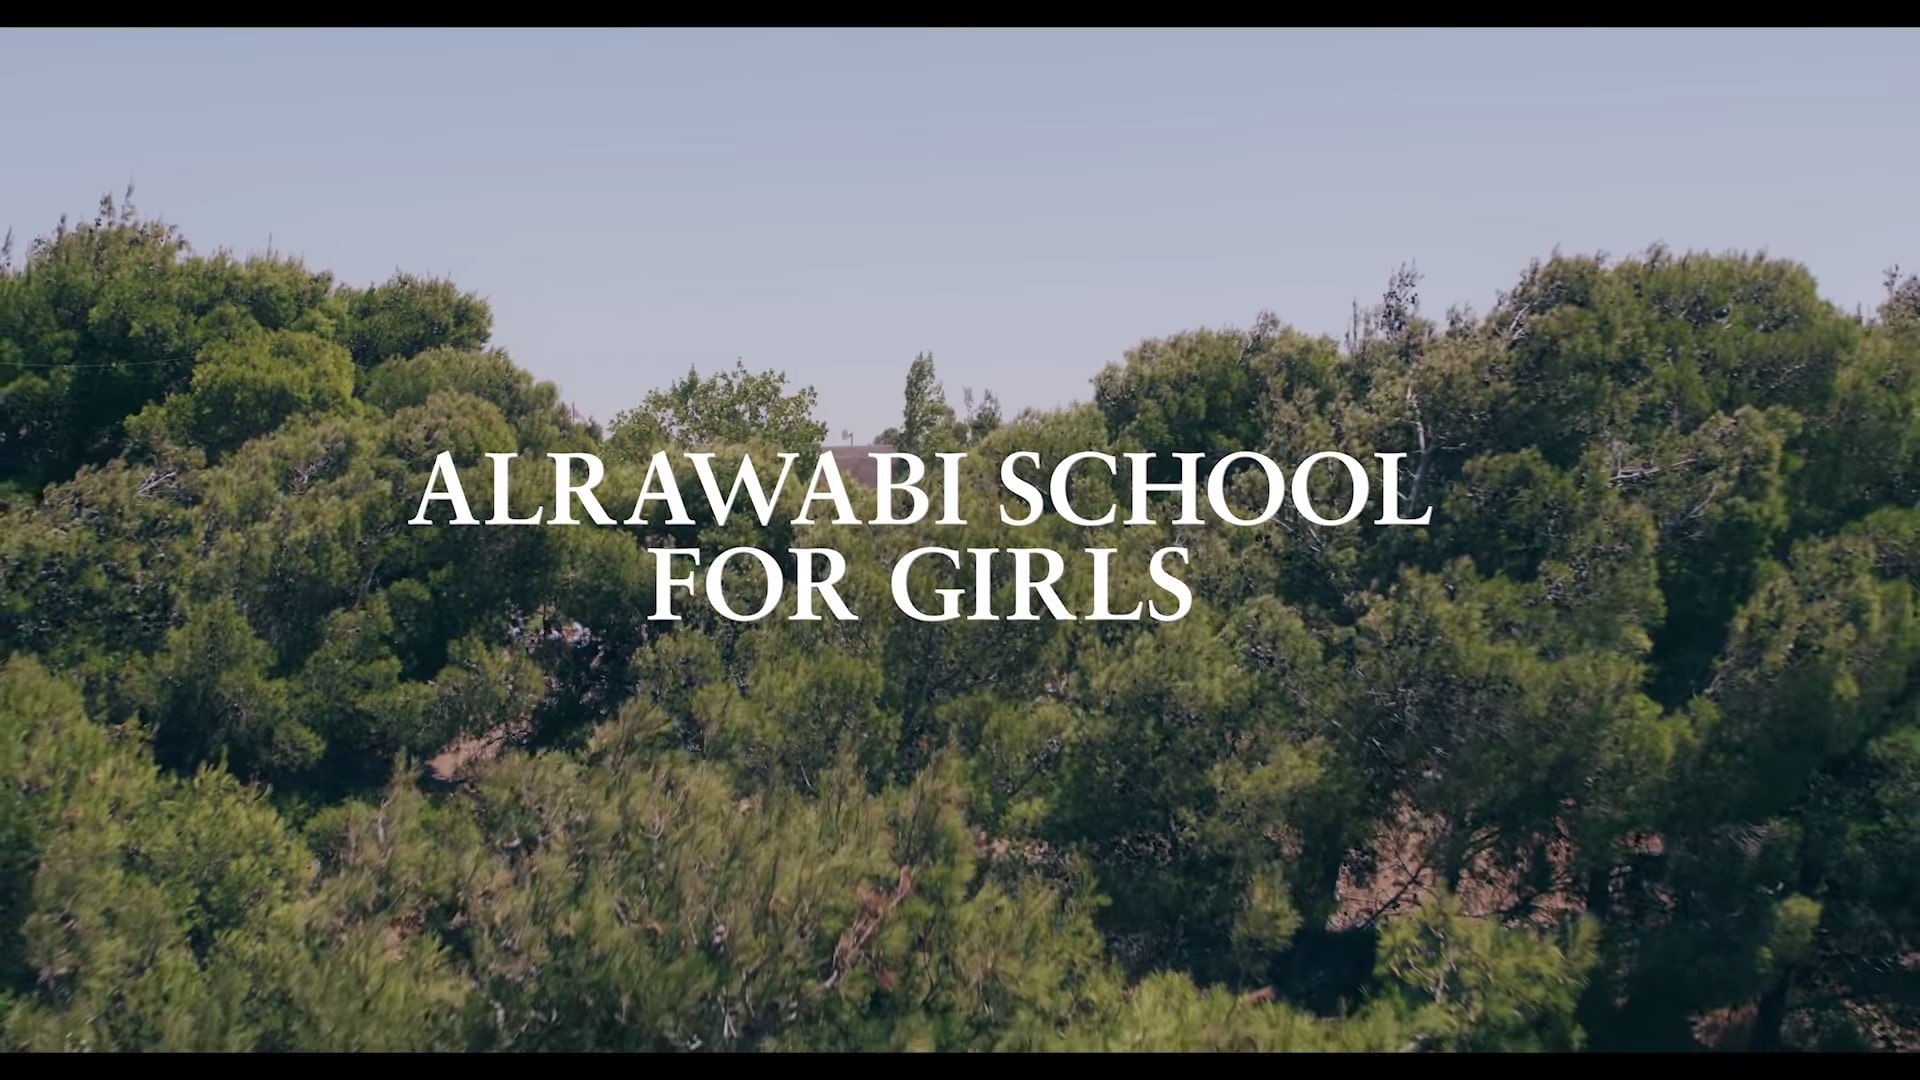 Alrawabi school for girls